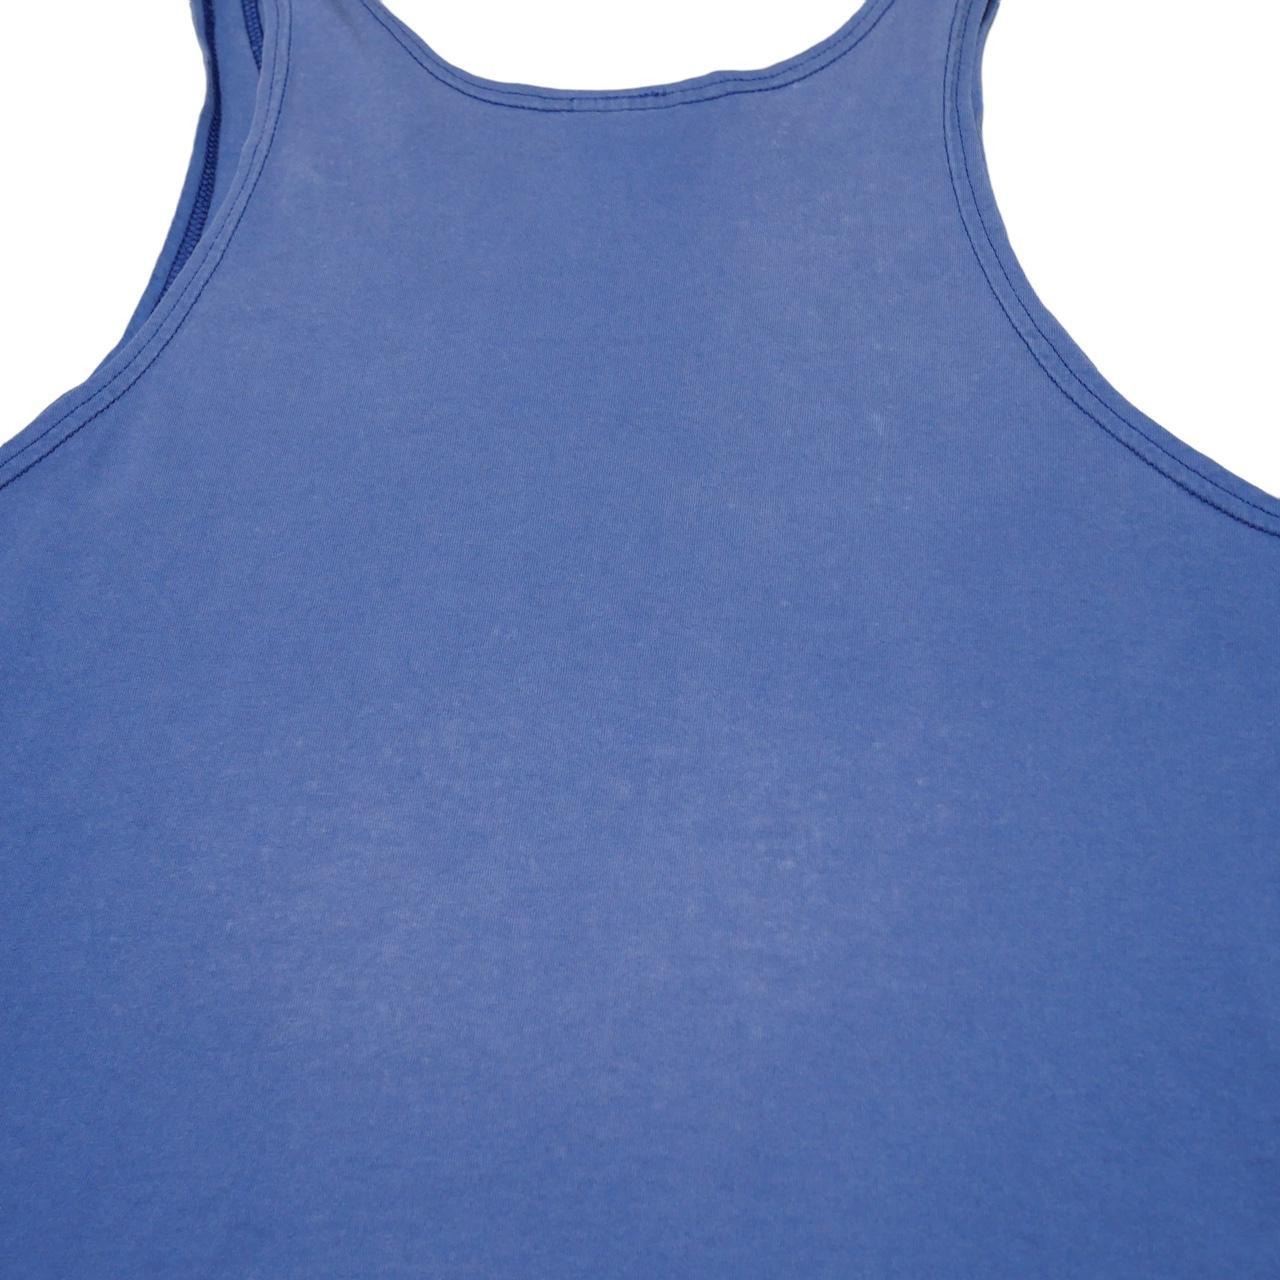 Nike Men's Blue and White Vest (6)